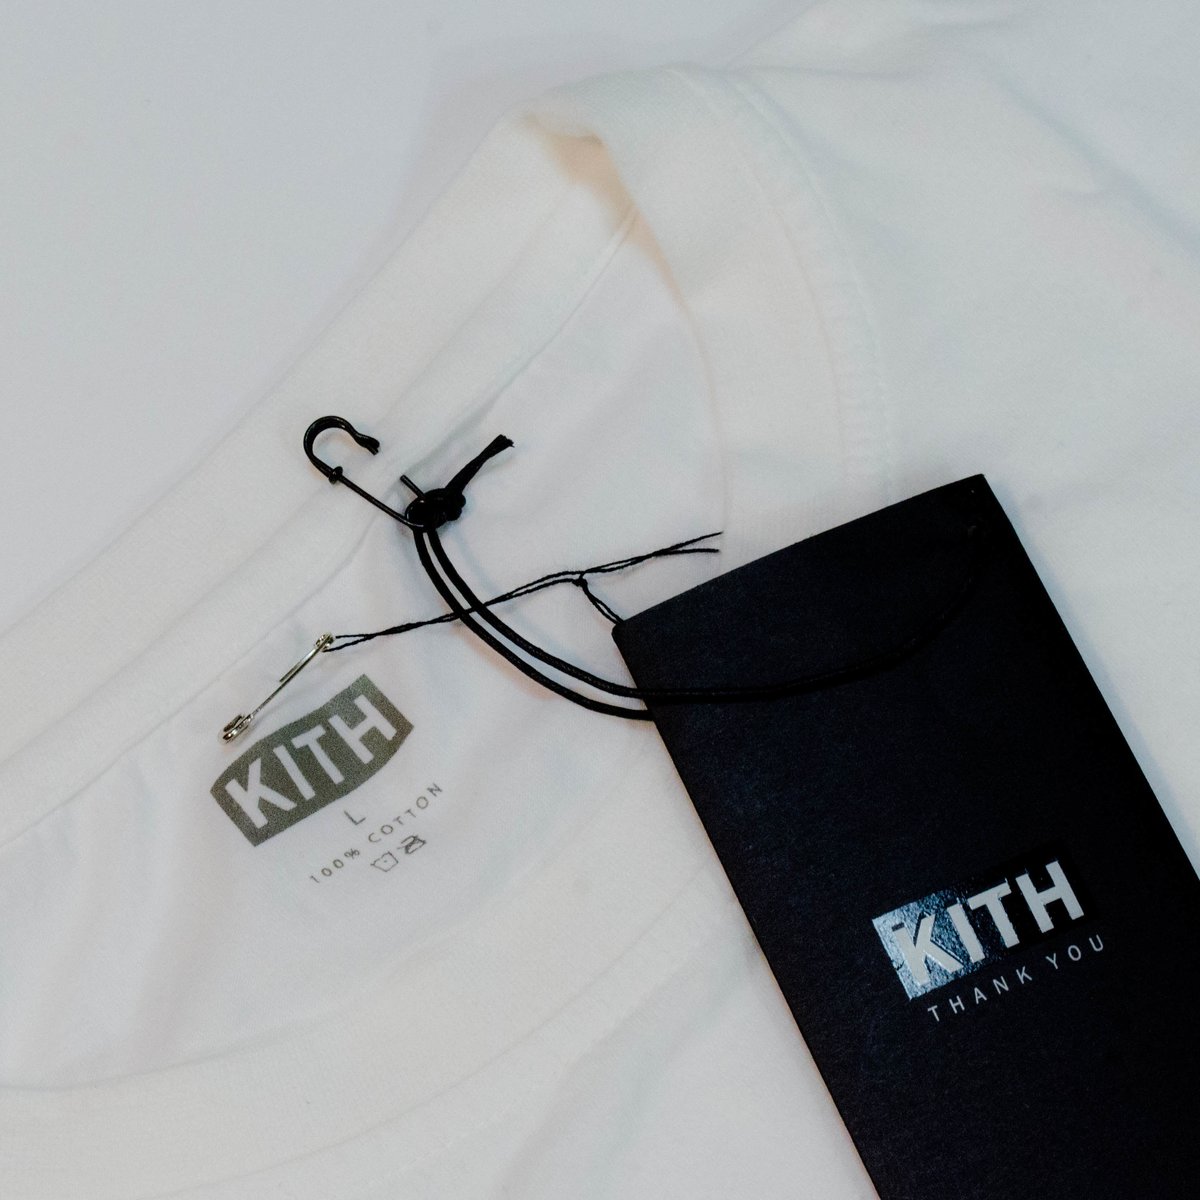 kith カラーシャツ L